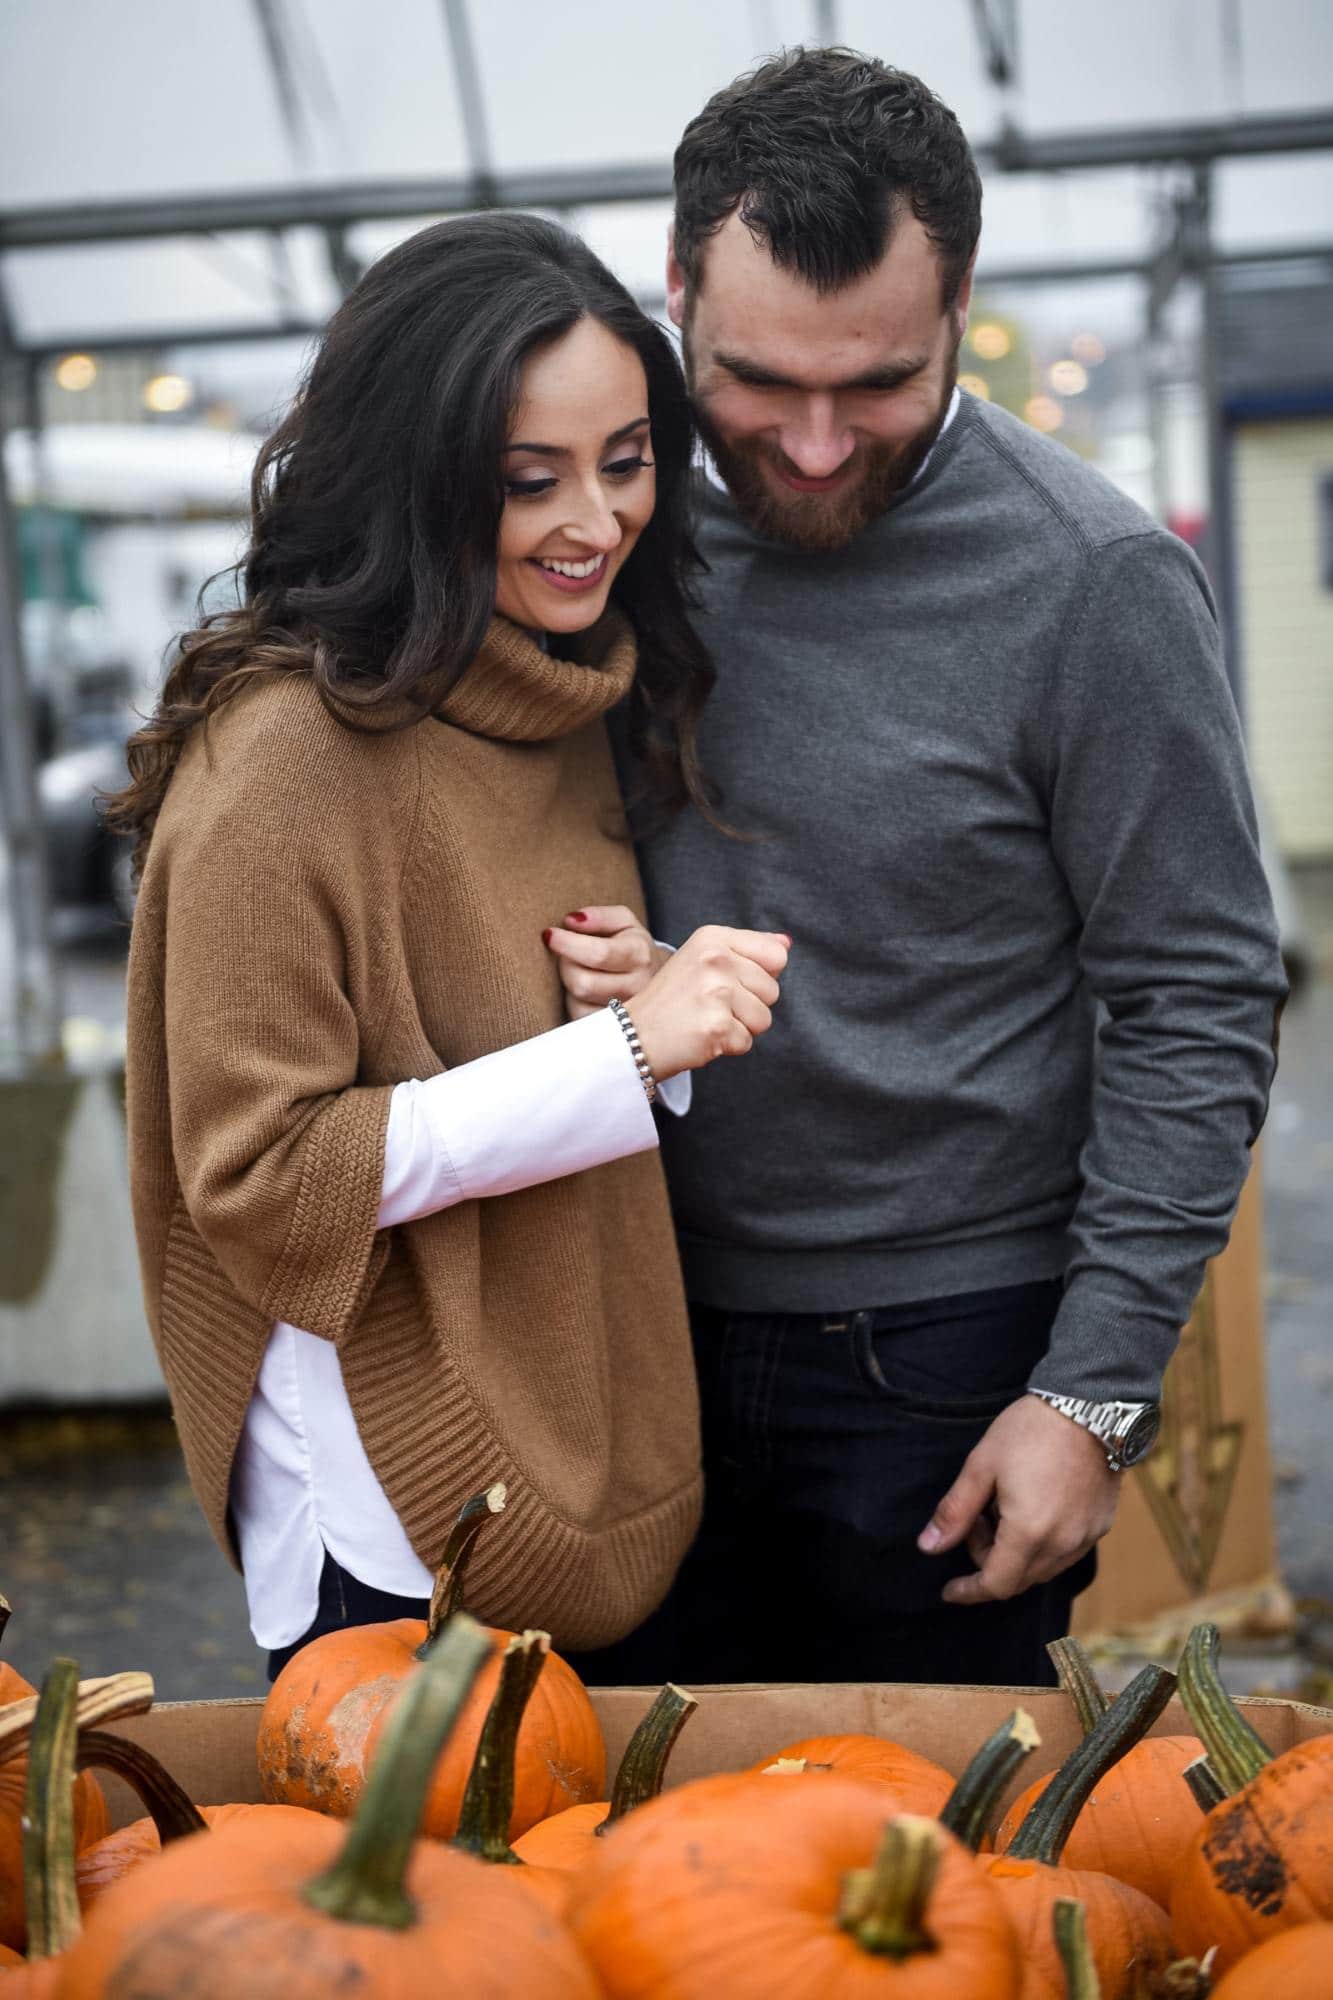 sandra marc andre raining casual shoot walter atwater market cute sweater romantic couple pumpkin season